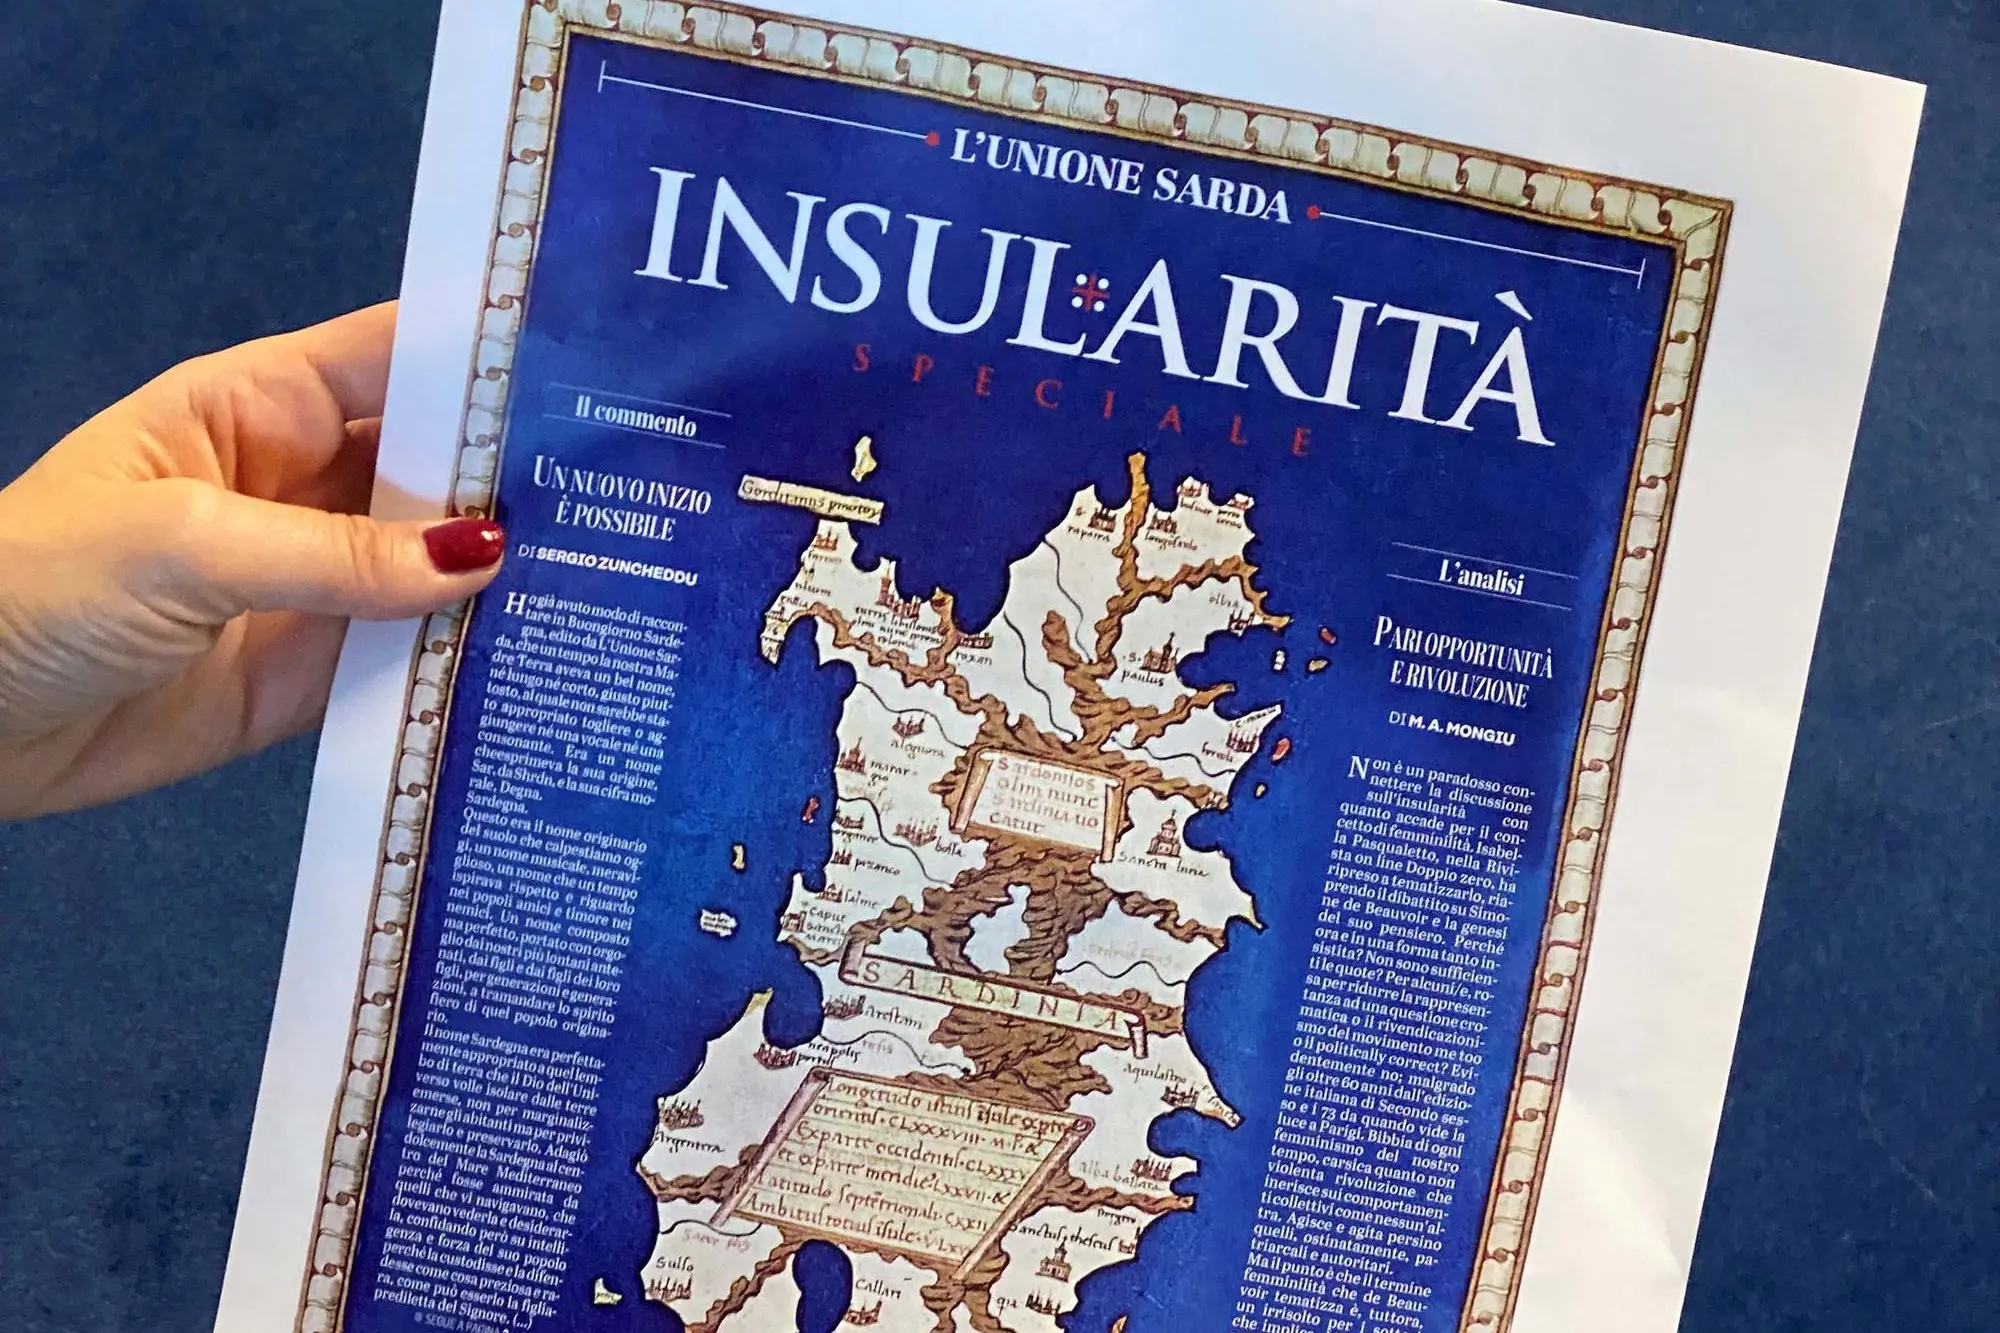 La copertina dell'inserto sull'Insularità in omaggio giovedì con L'Unione Sarda